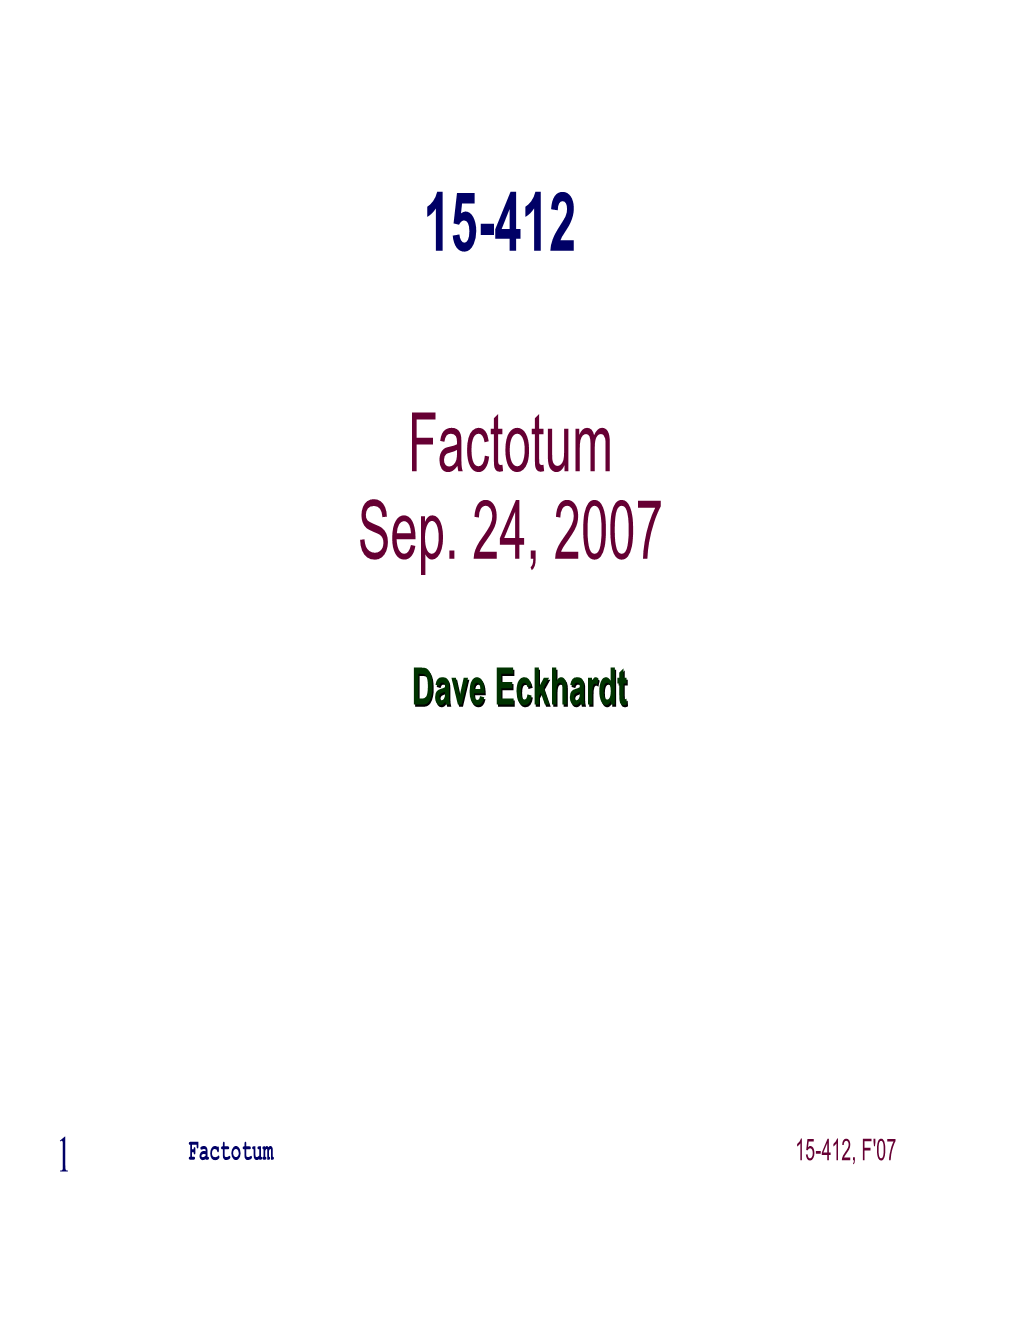 Factotum Sep. 24, 2007